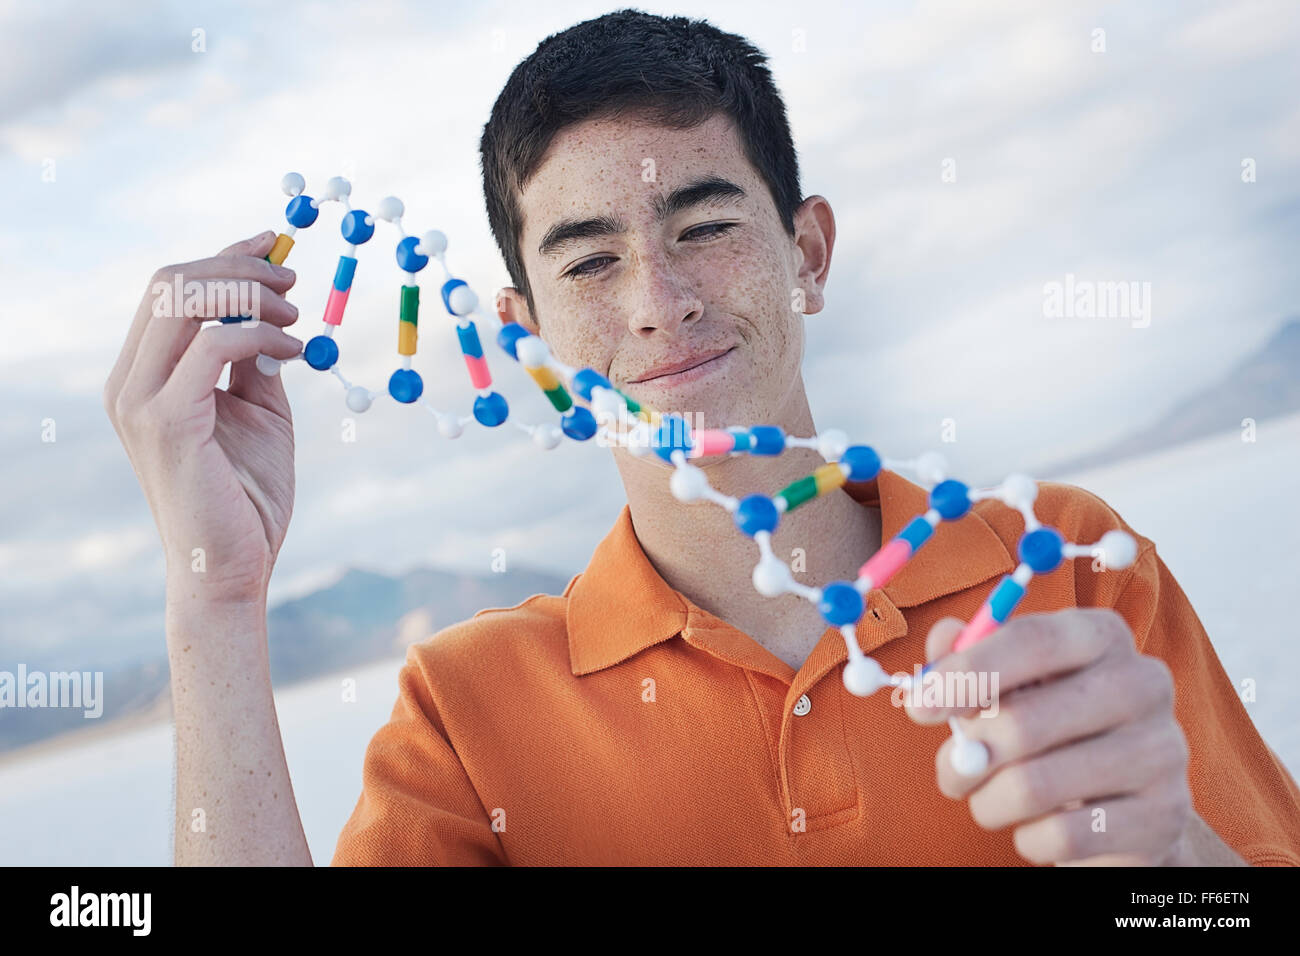 Ein Teenager in eine orange Polo-Shirt, eine molekulare Struktur-Modell hält und es untersuchen. Stockfoto